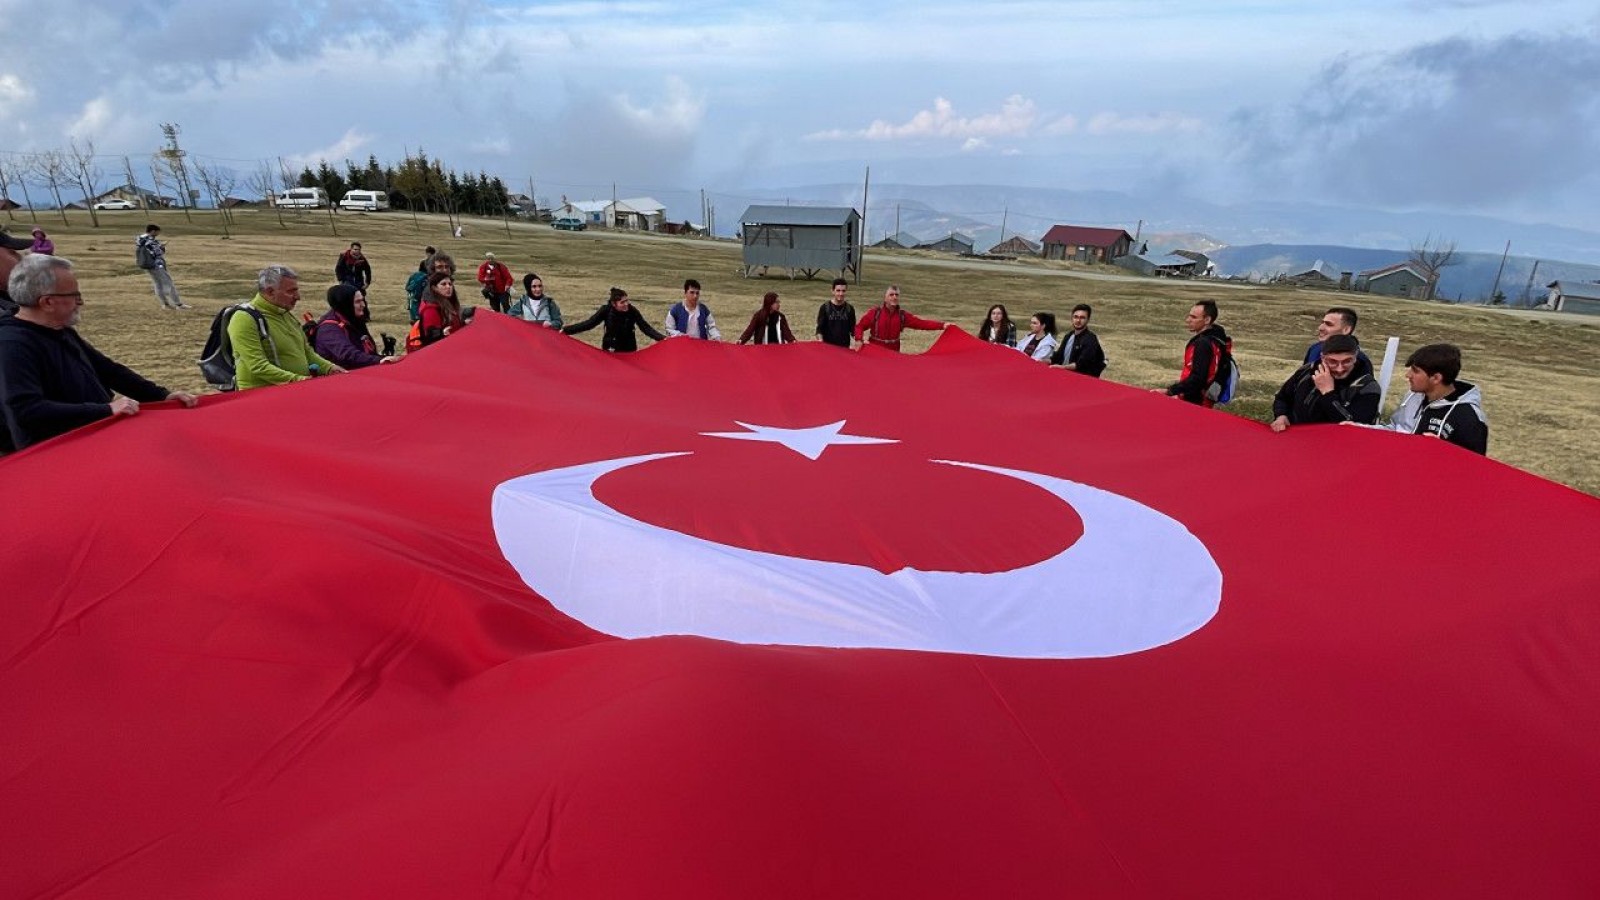 Düzce'de 1830 rakımda Türk bayrağı açarak Cumhuriyet'in 100. yıl dönümünü kutladılar;